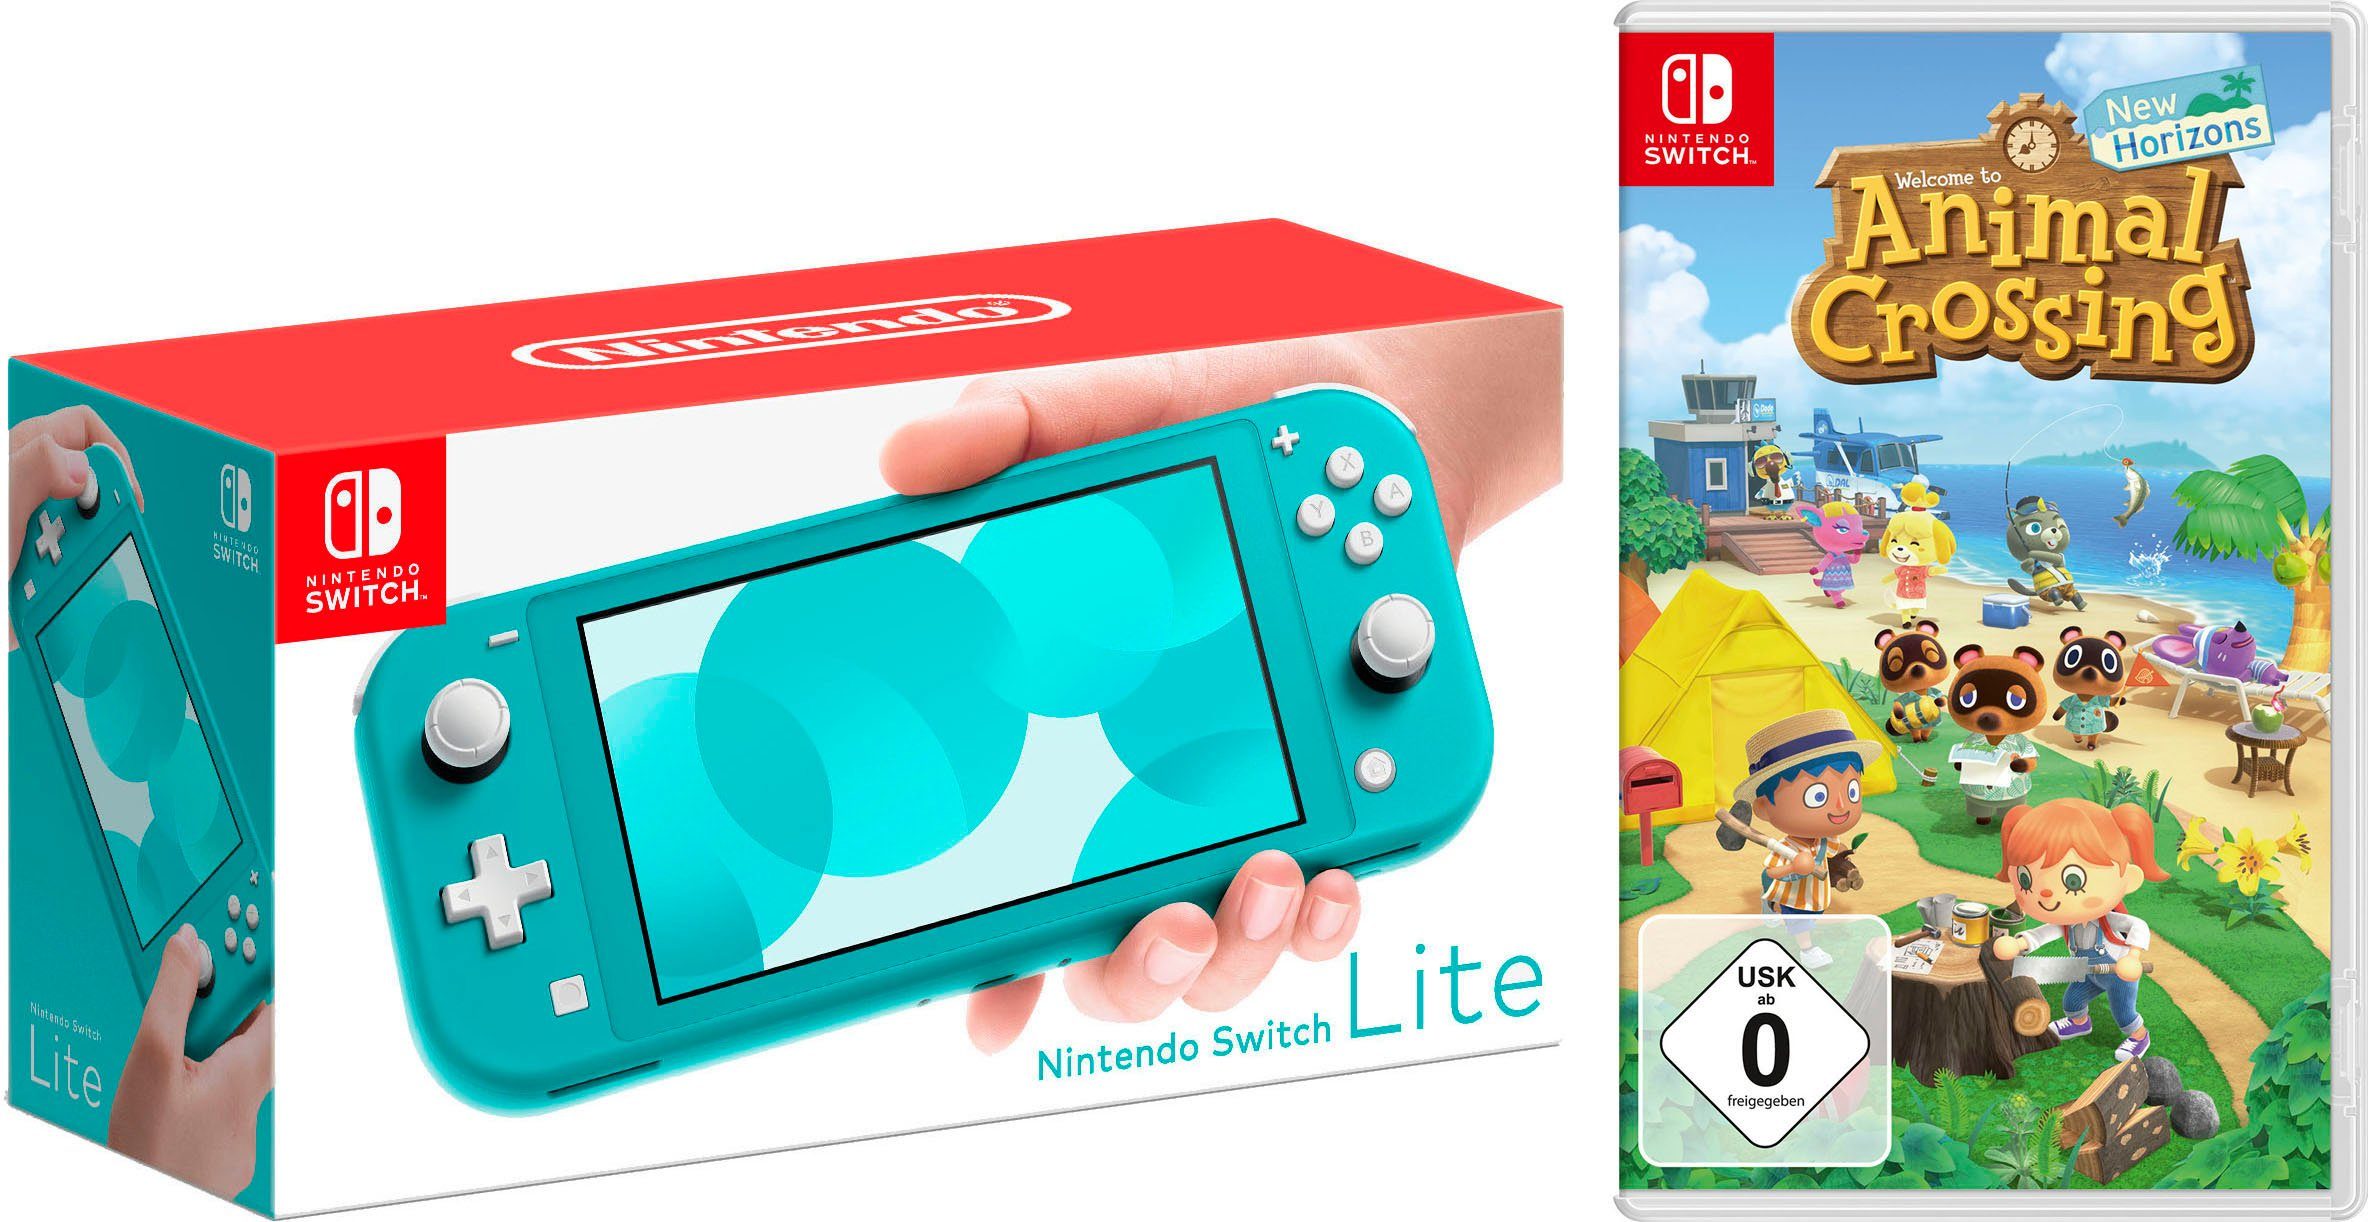 Nintendo Switch Lite, inkl. Animal Crossing, Erscheinungstermin: 20.03.2020